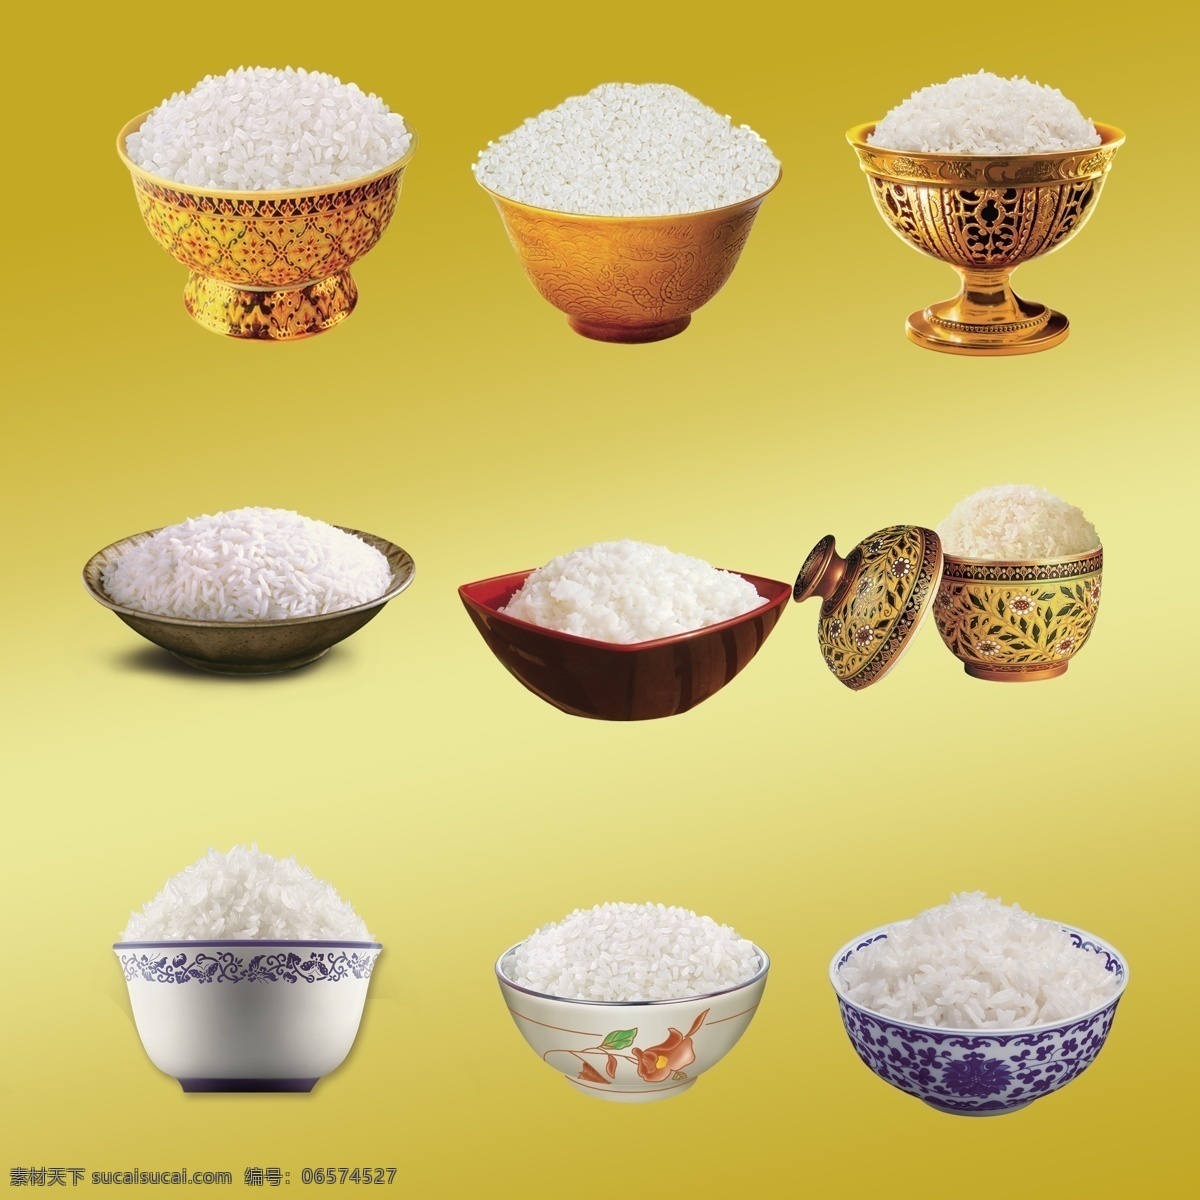 米饭图片 米饭 碗 米饭碗 大米饭 碗装米饭